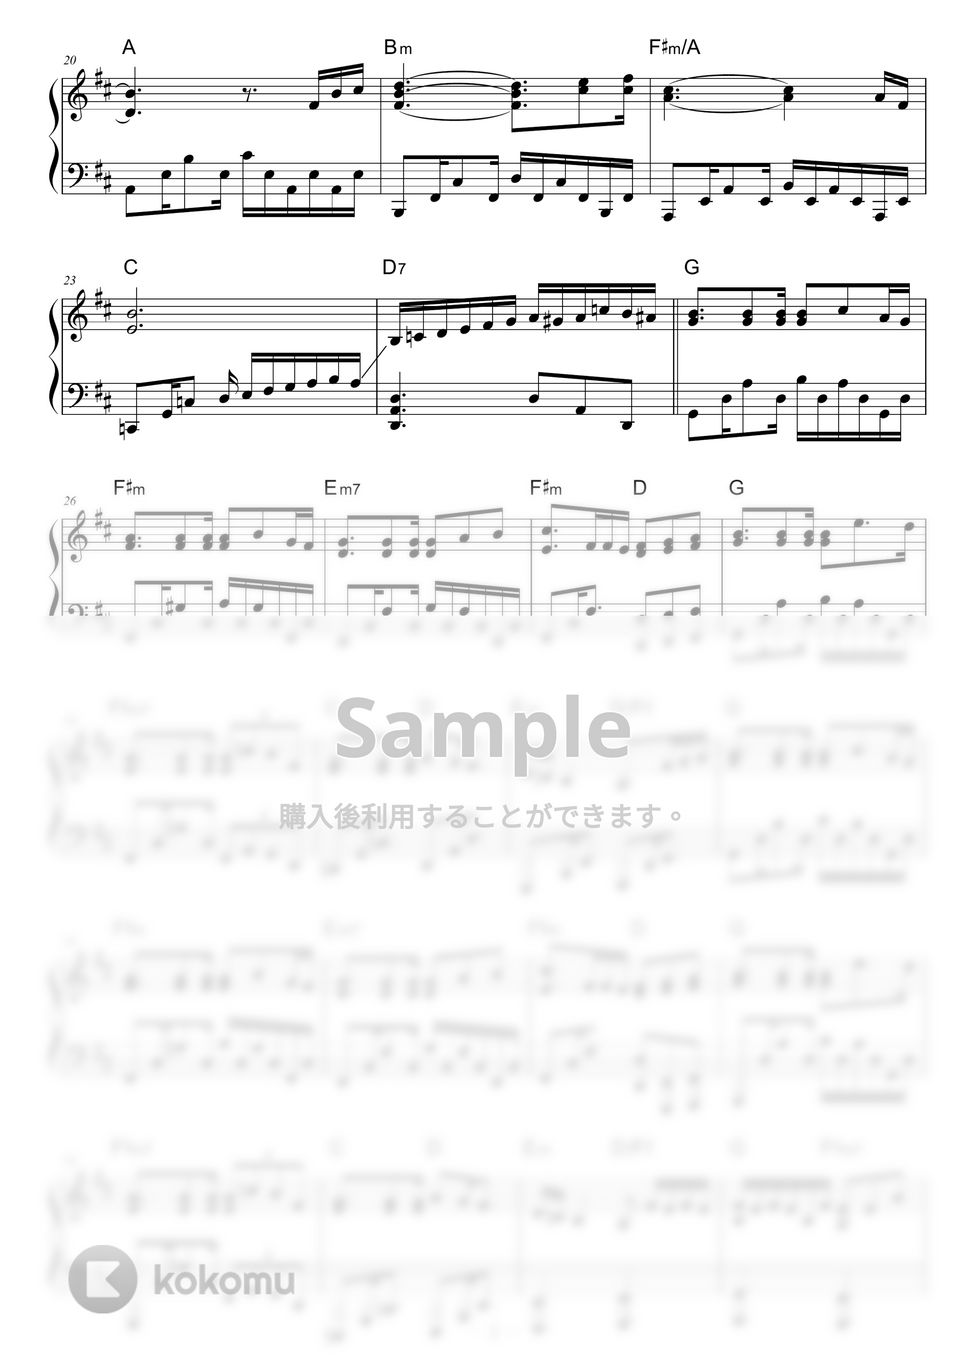 PRIMITIVE ART ORCHESTRA - Qualia by piano*score